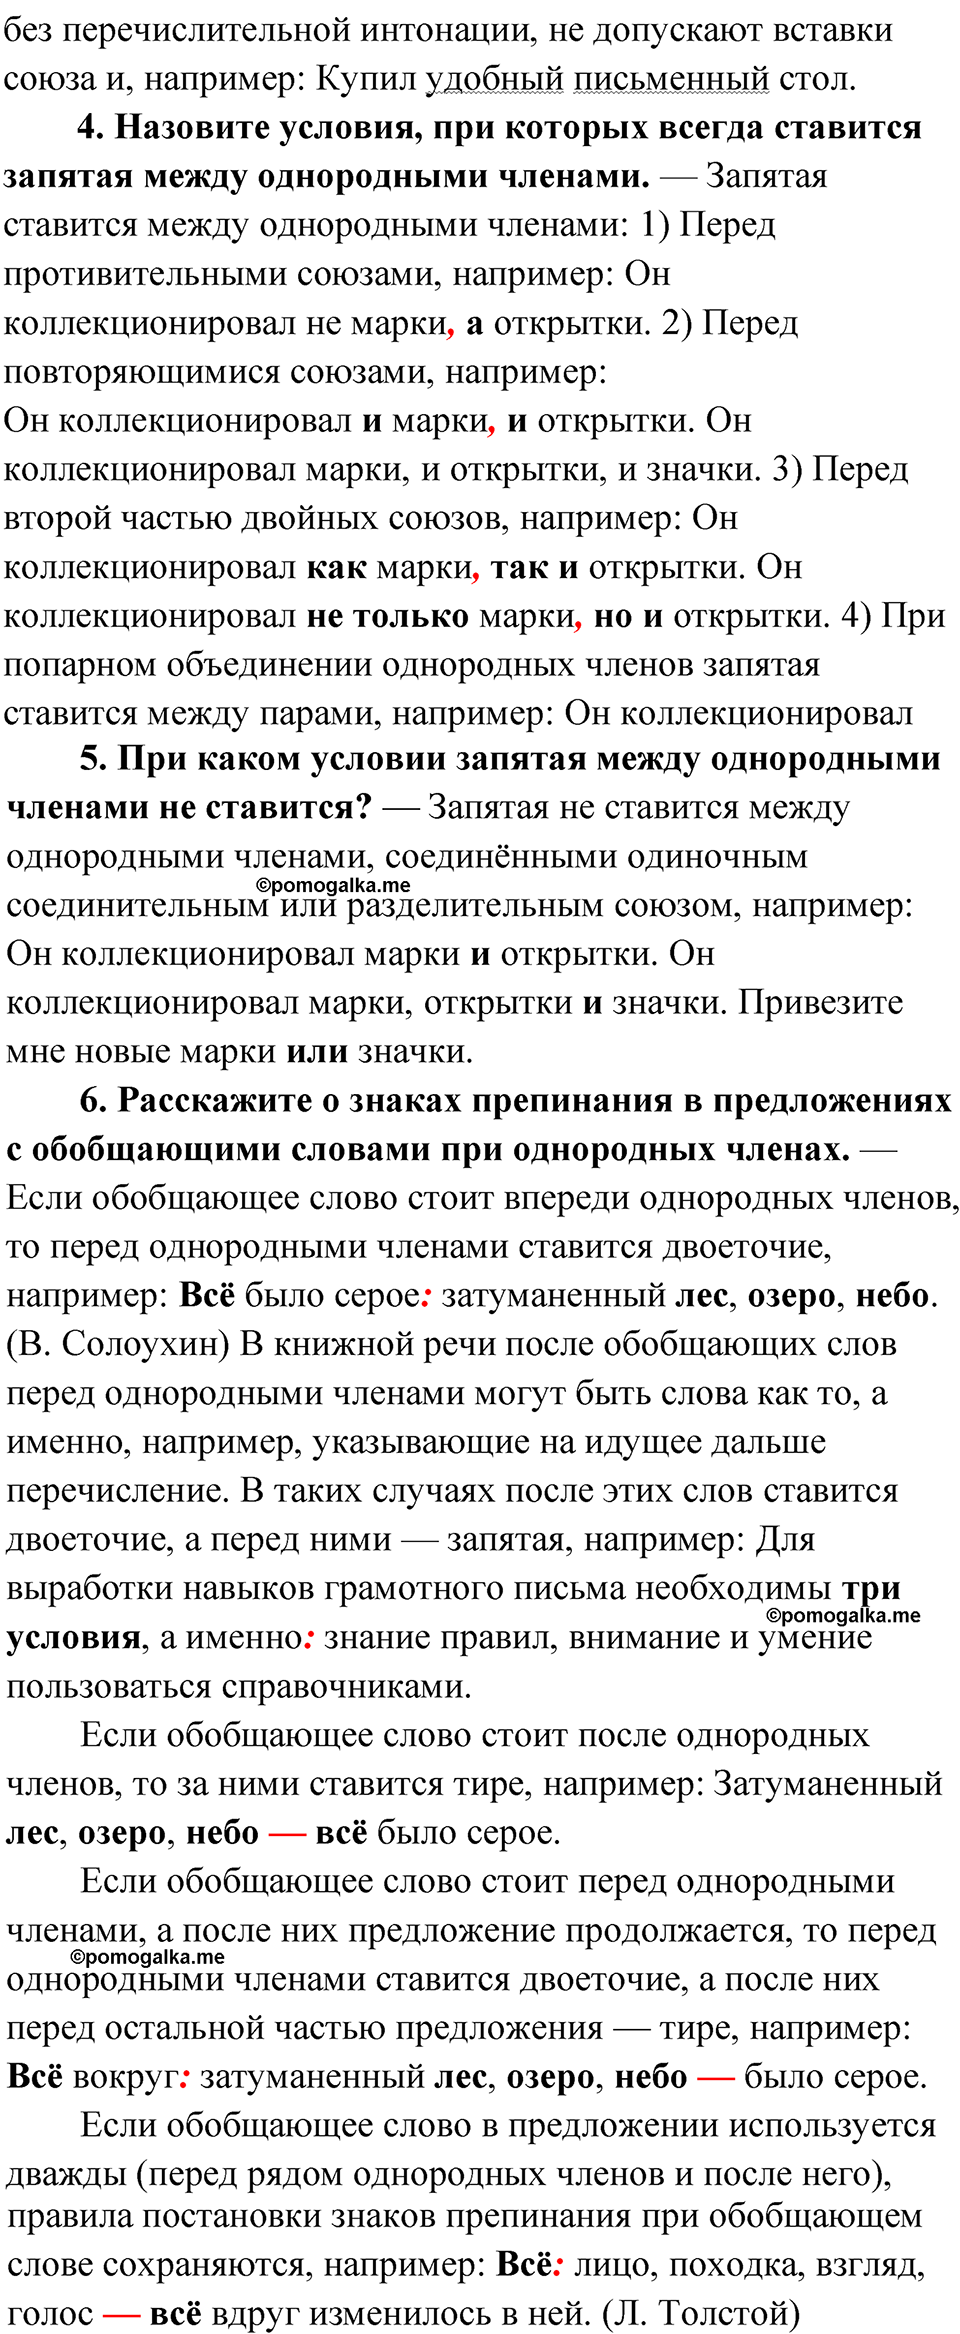 вопросы и задания для повторения, страница 193 русский язык 8 класс Бархударов 2023 год